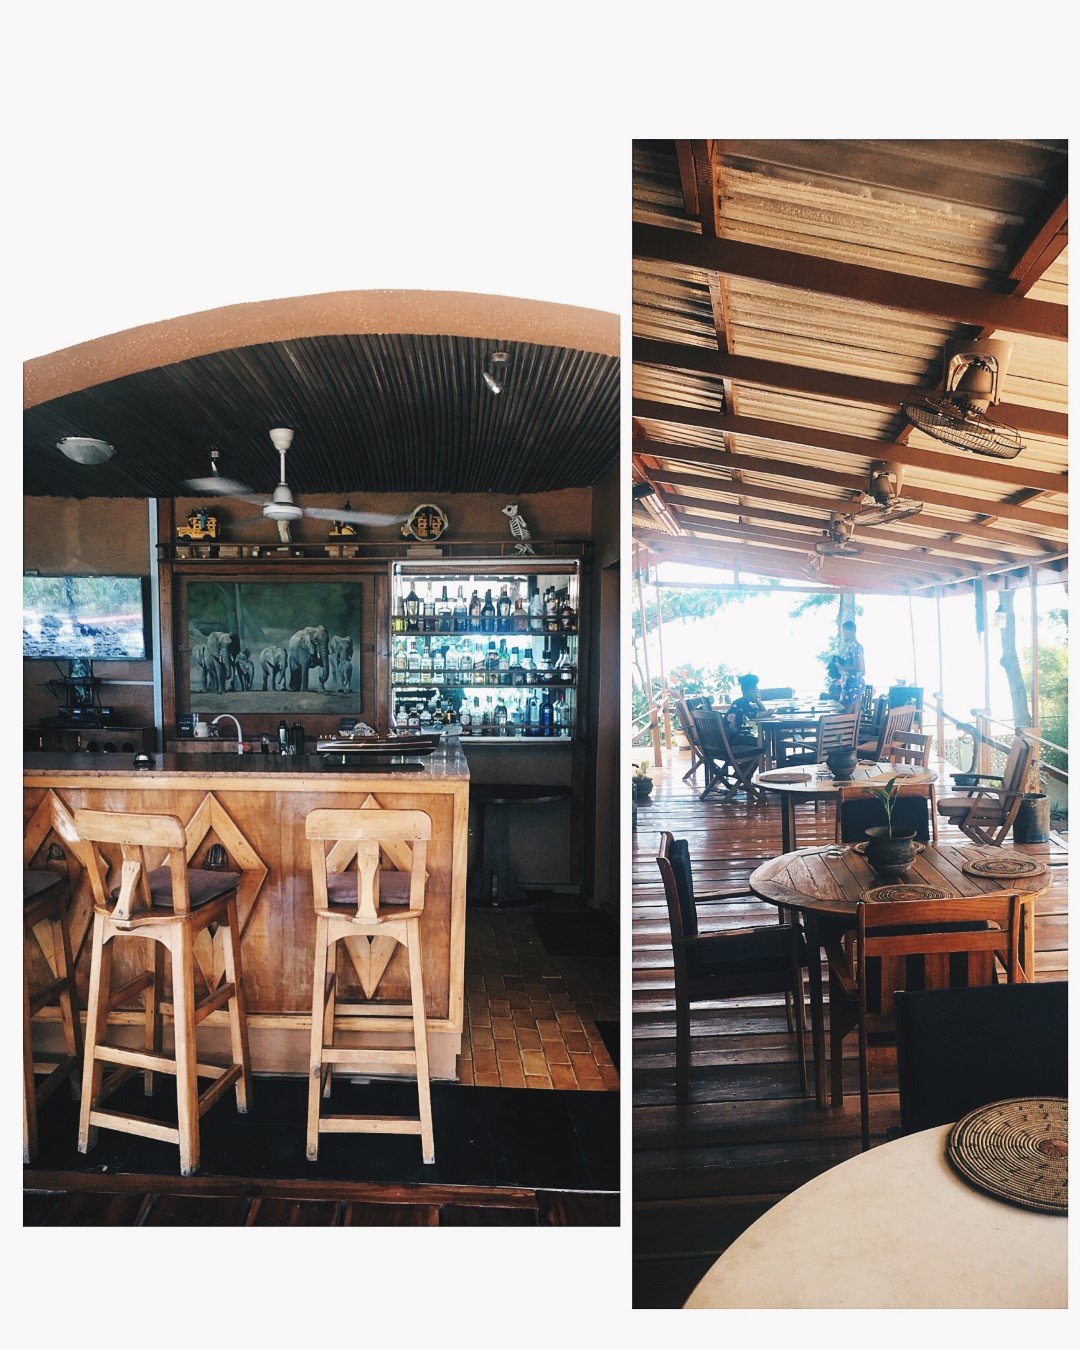 Tarkwa cafe at Jaybee beach camp